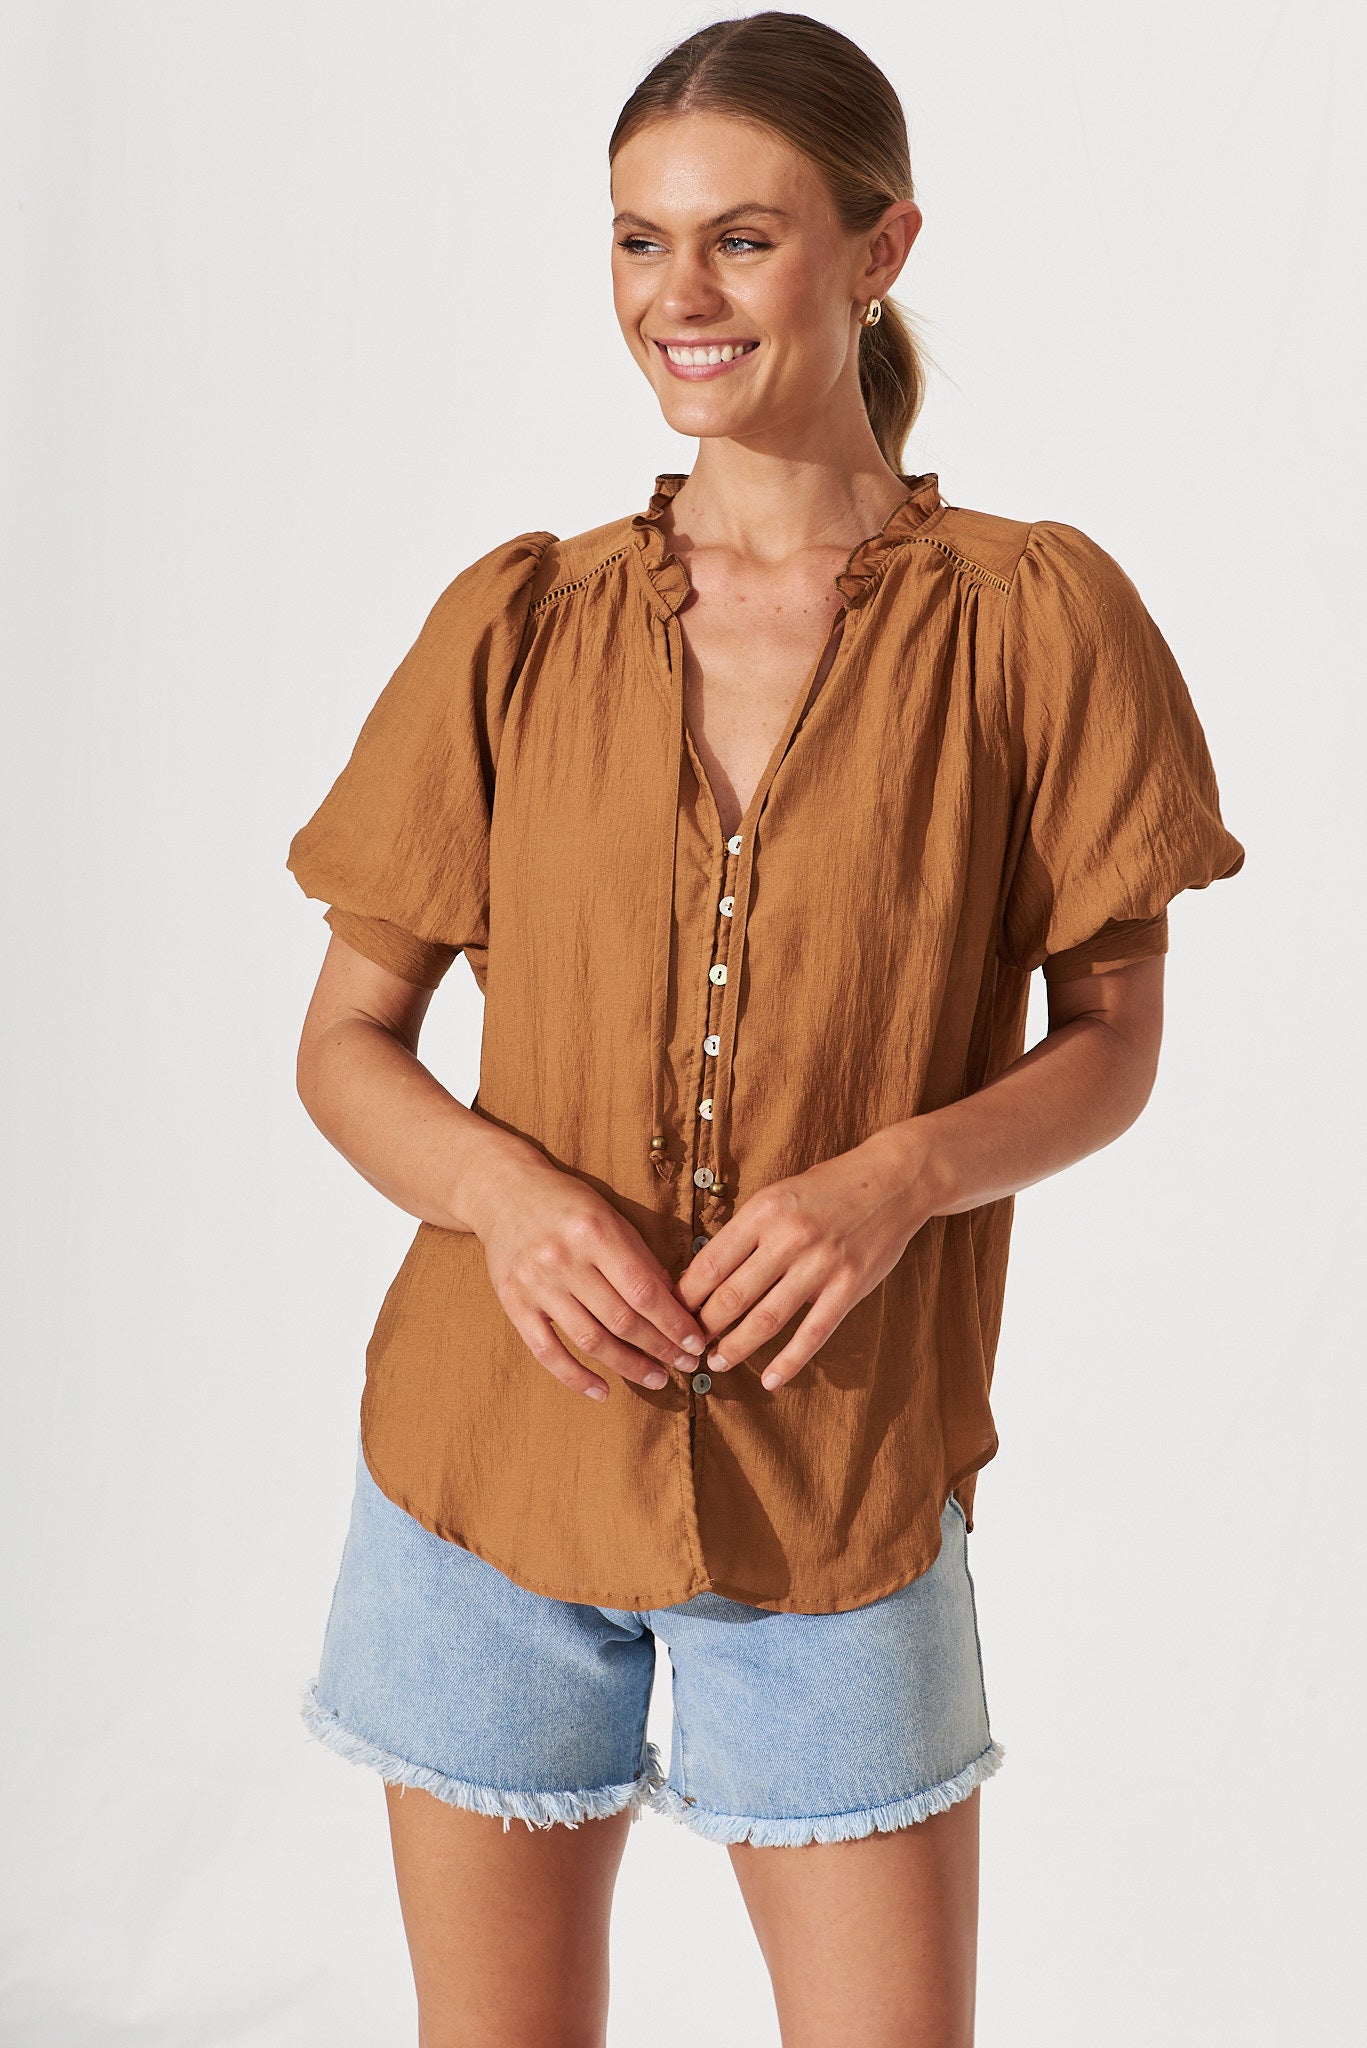 Jupiter Shirt In Camel Brown - front